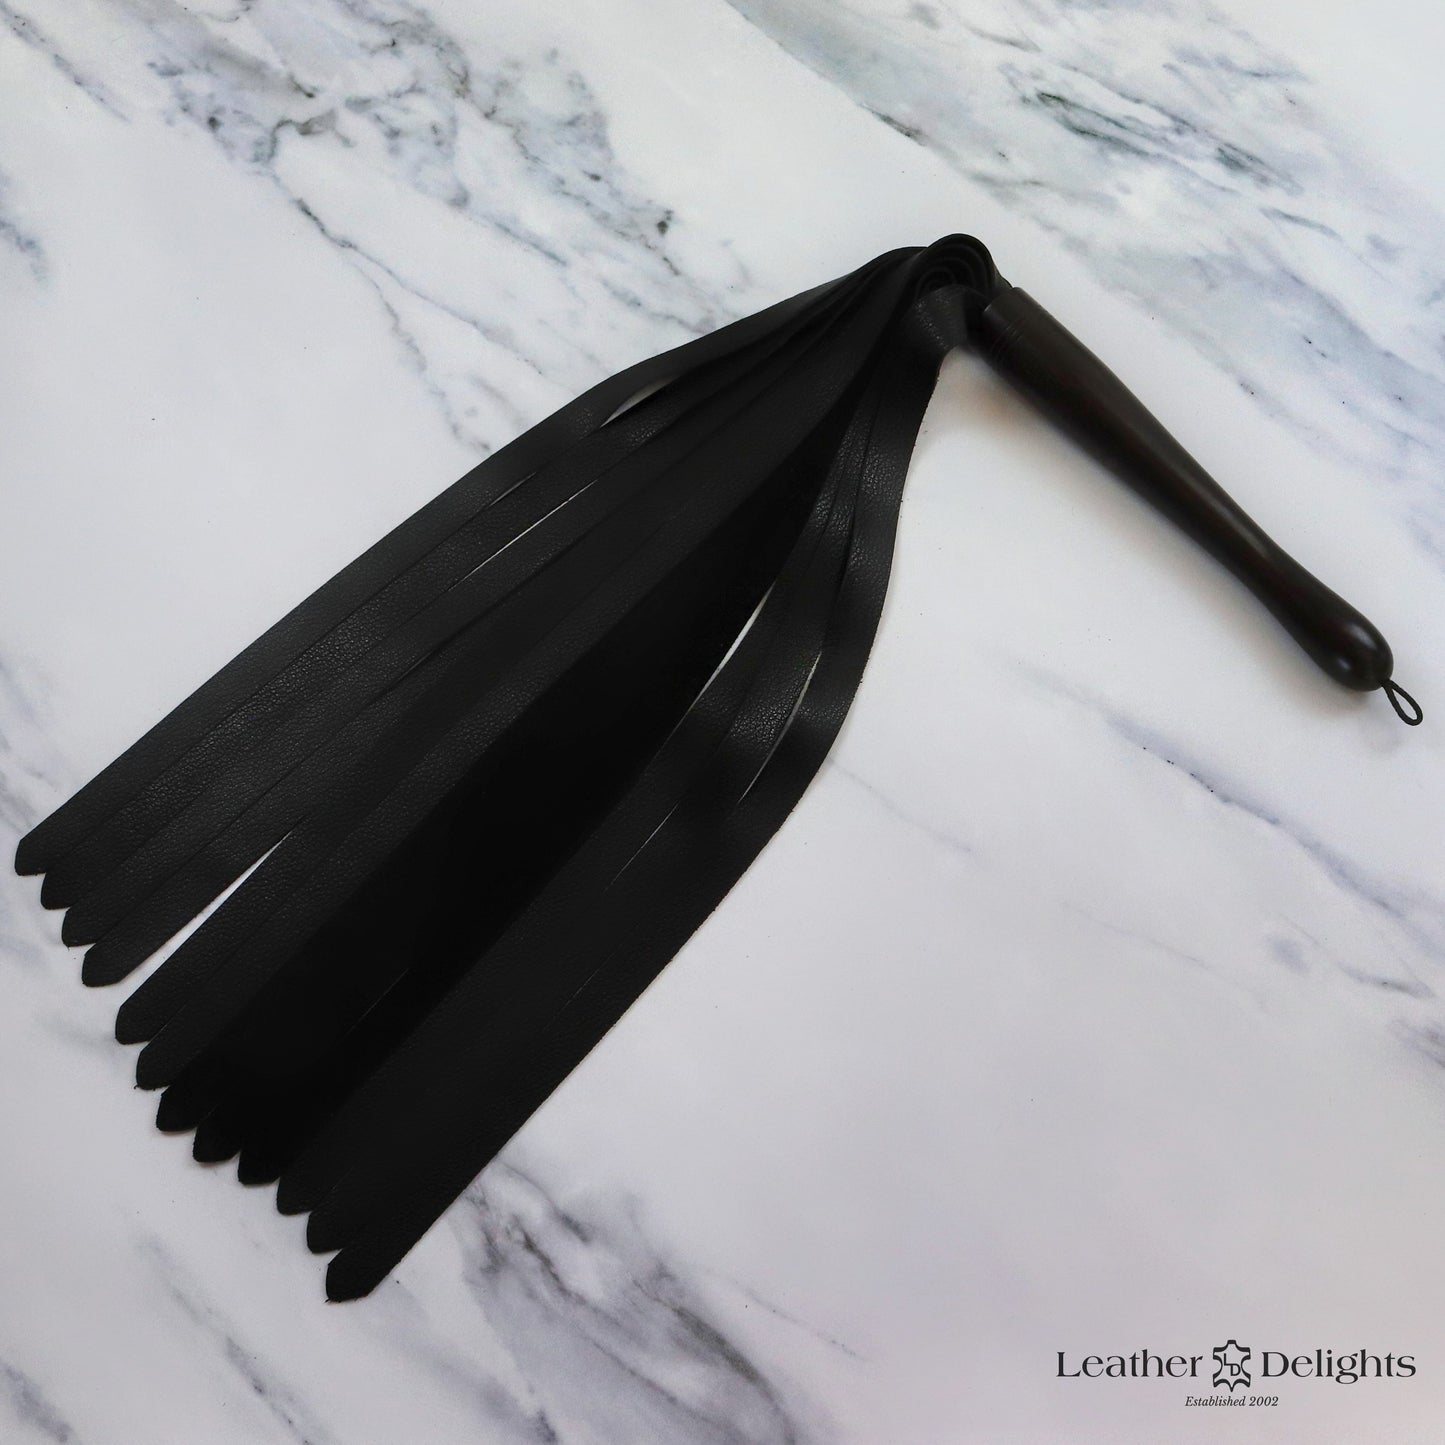 Large Soft Black Leather Flogger with Ebony Handle